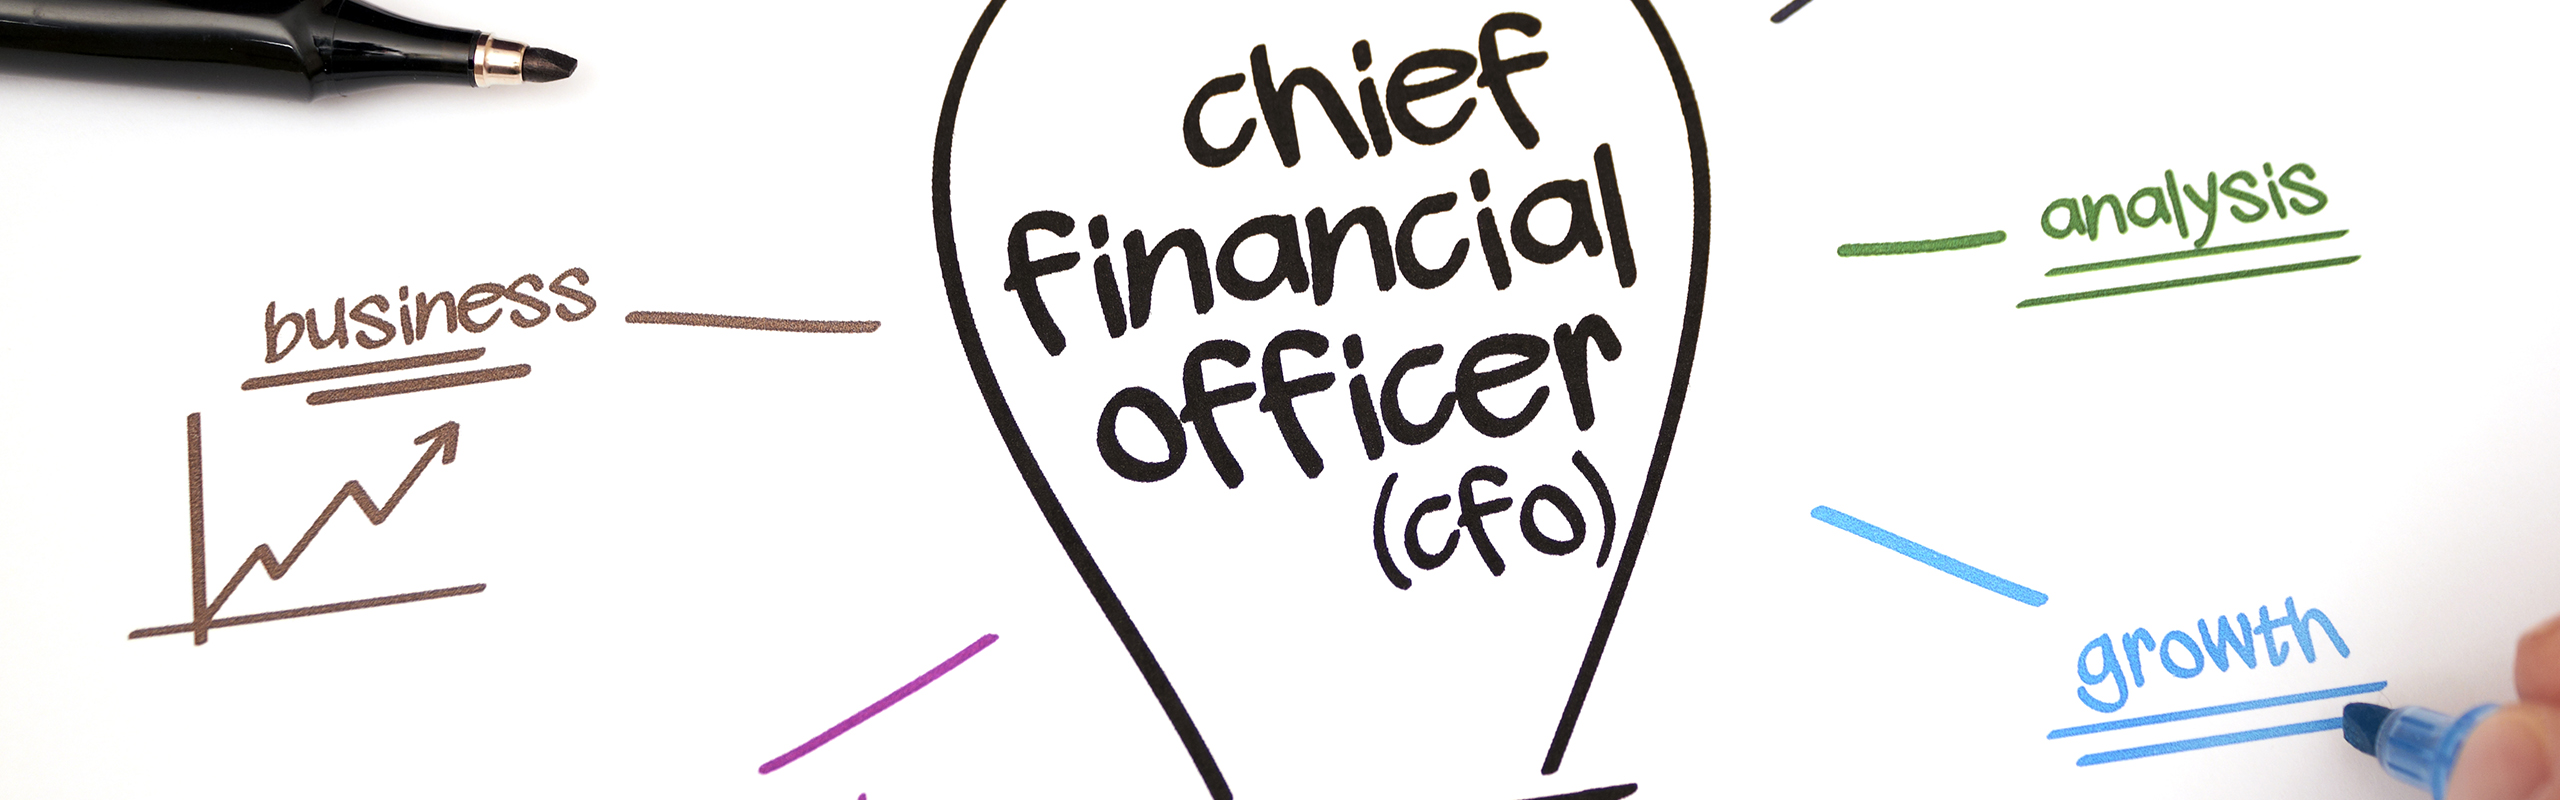 CFO operational concerns